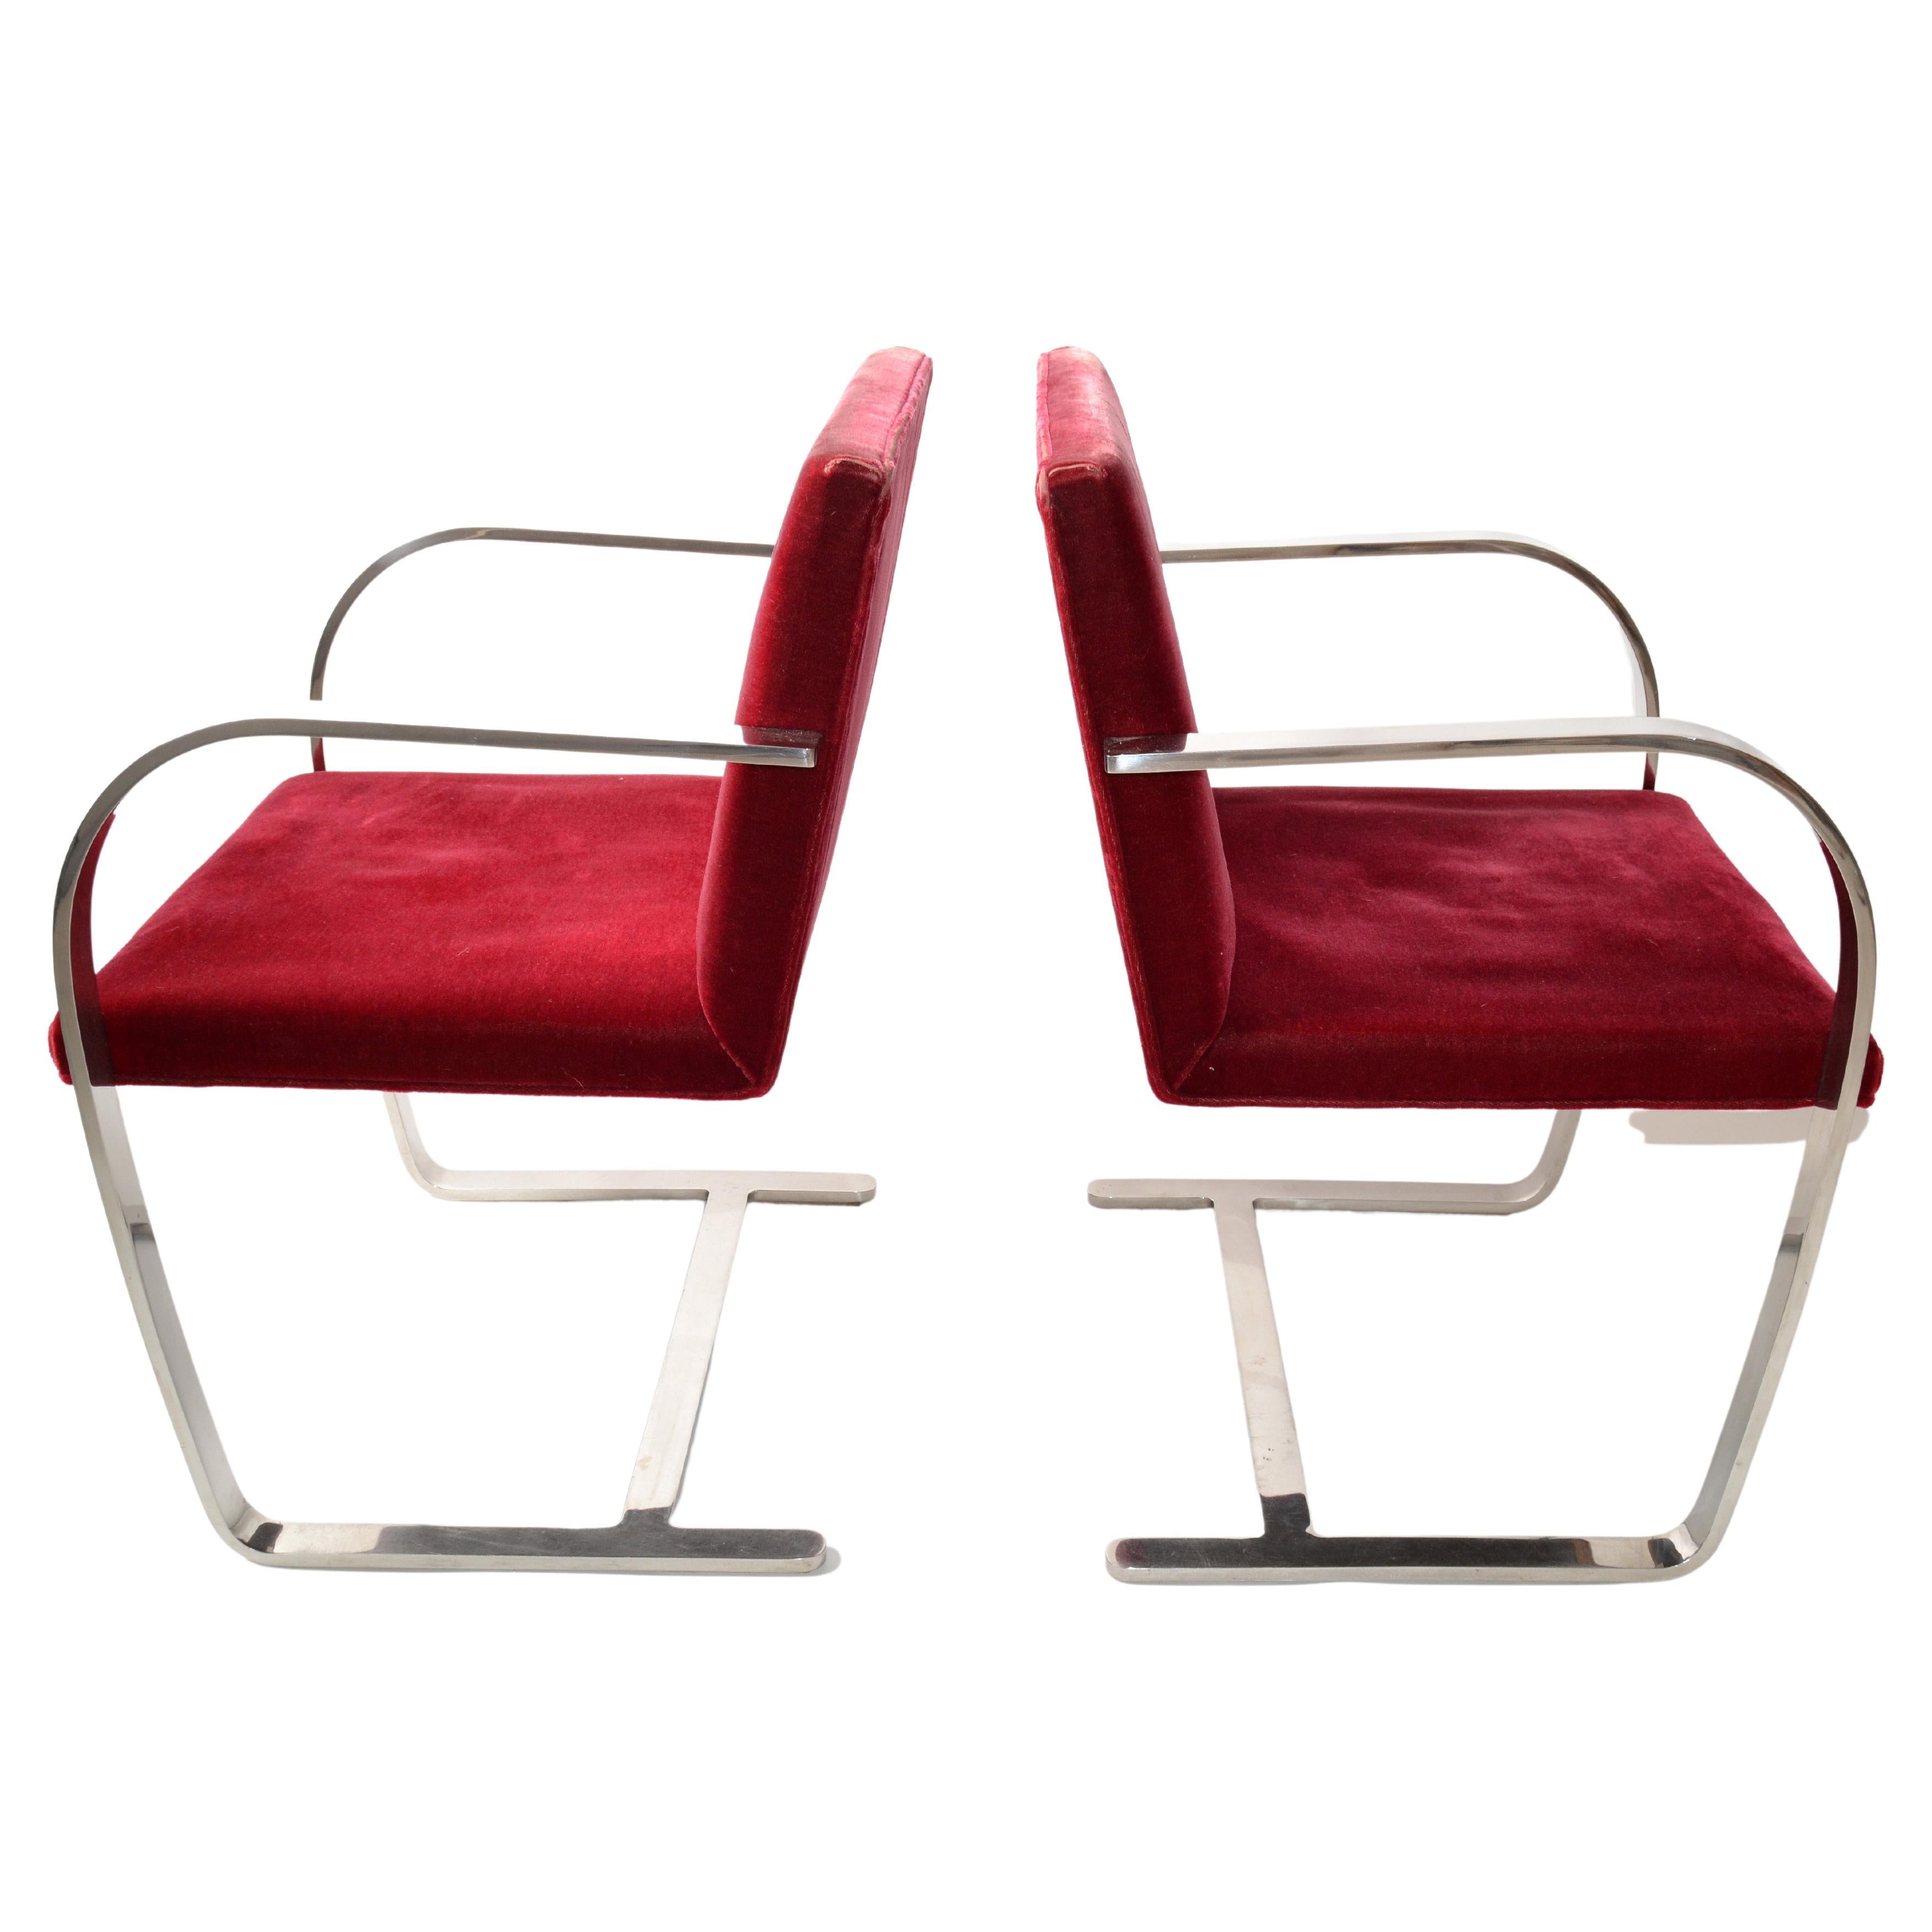 Mies Van Der Rohe für Knoll, Brno-Stühle aus Edelstahl, roter Samt 1979, Paar